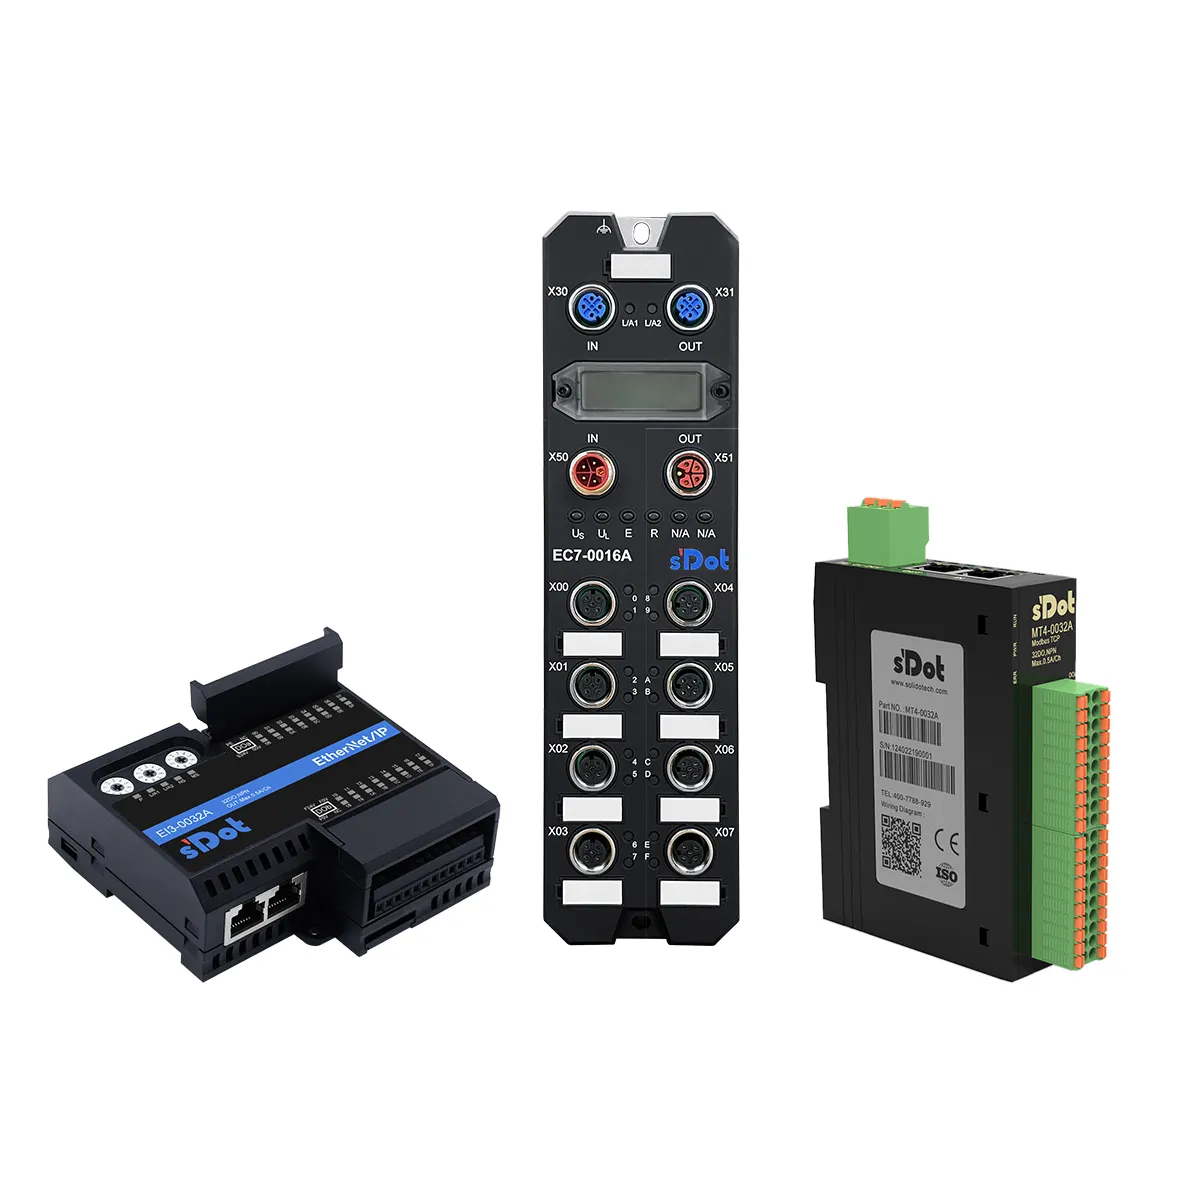 Solidot modul I/O Remote IO, Input Digital 8 saluran terintegrasi 8 saluran Output Digital 8 DI 8 lakukan PNP | EC4-0808B